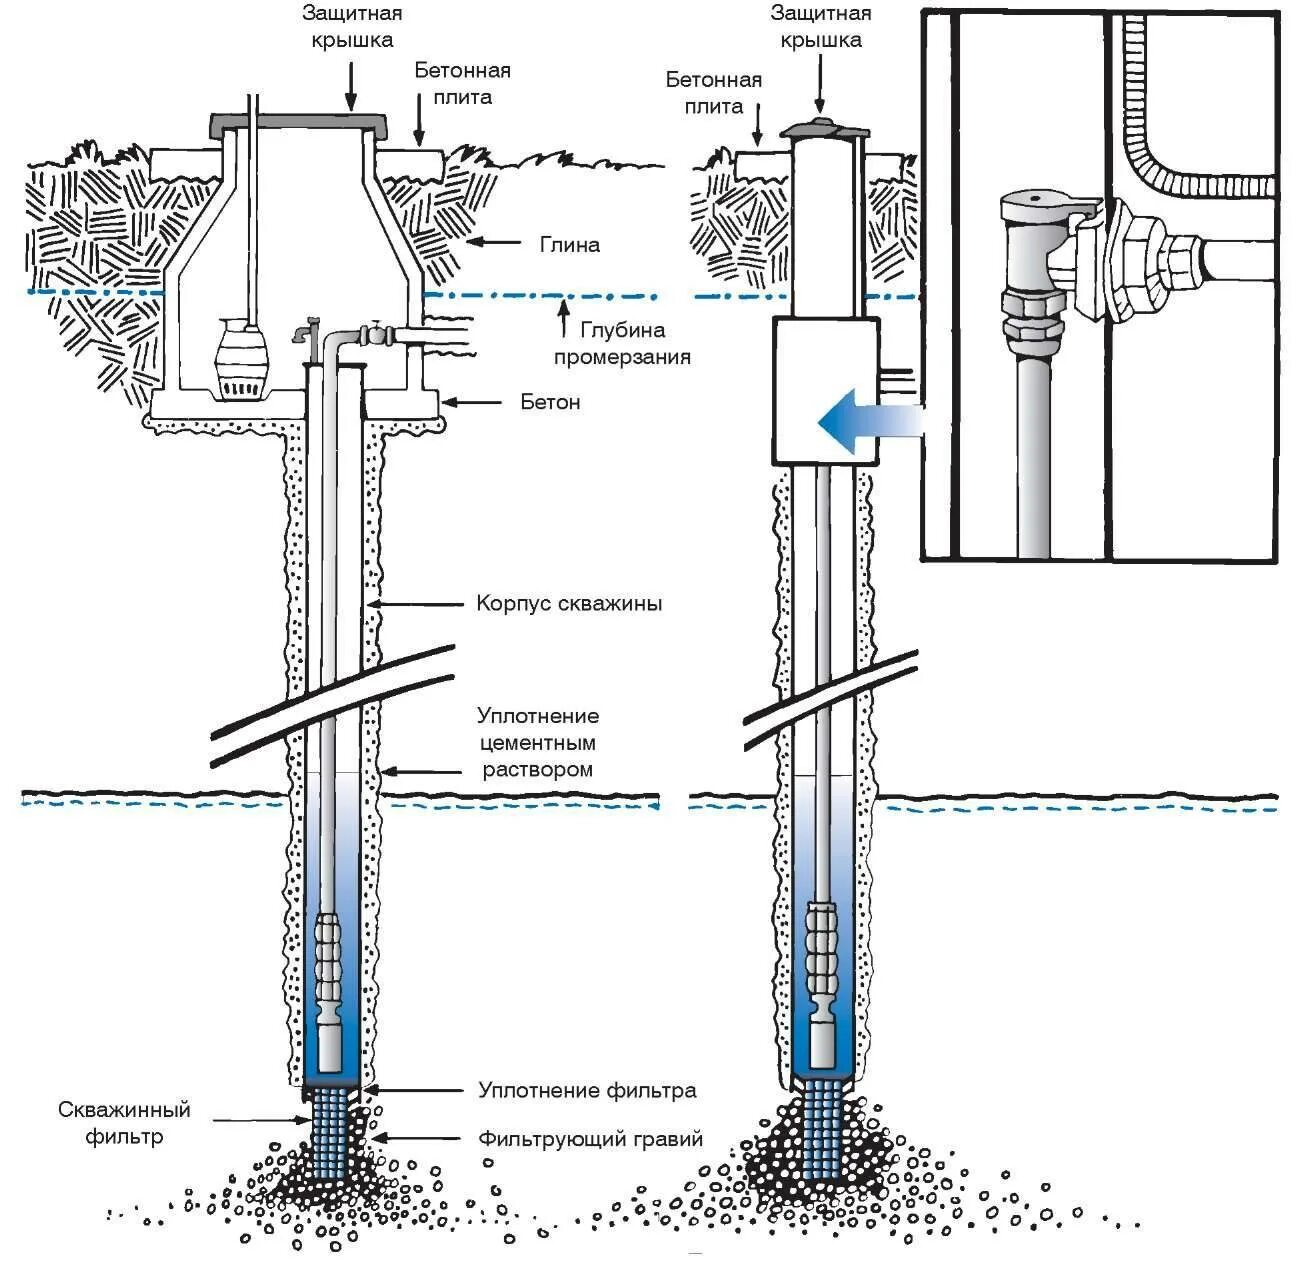 Гост скважина. Схема устройства скважины для воды. Устройство водозаборной скважины схема. Принципиальная схема водозаборной скважины. Схема воды скважины схема.